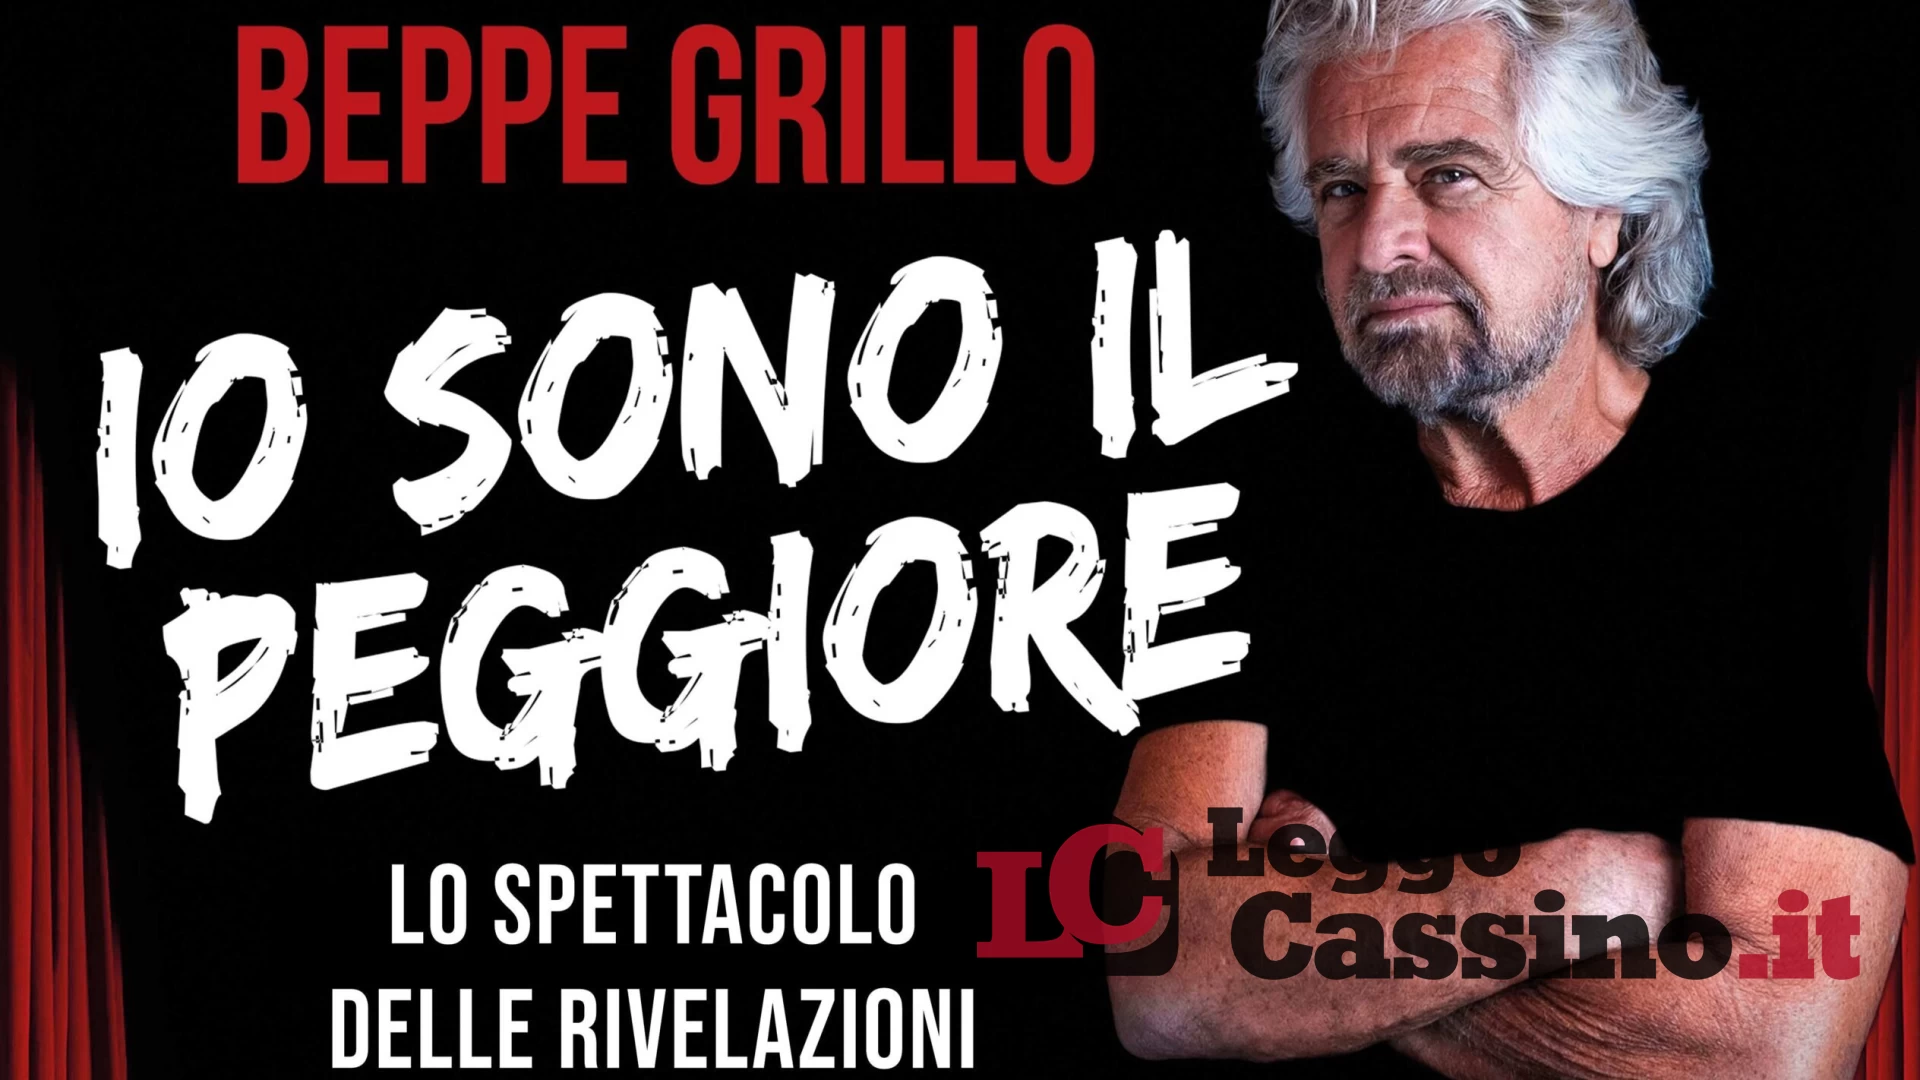 Stasera a Cassino al Manzoni arriva Beppe Grillo